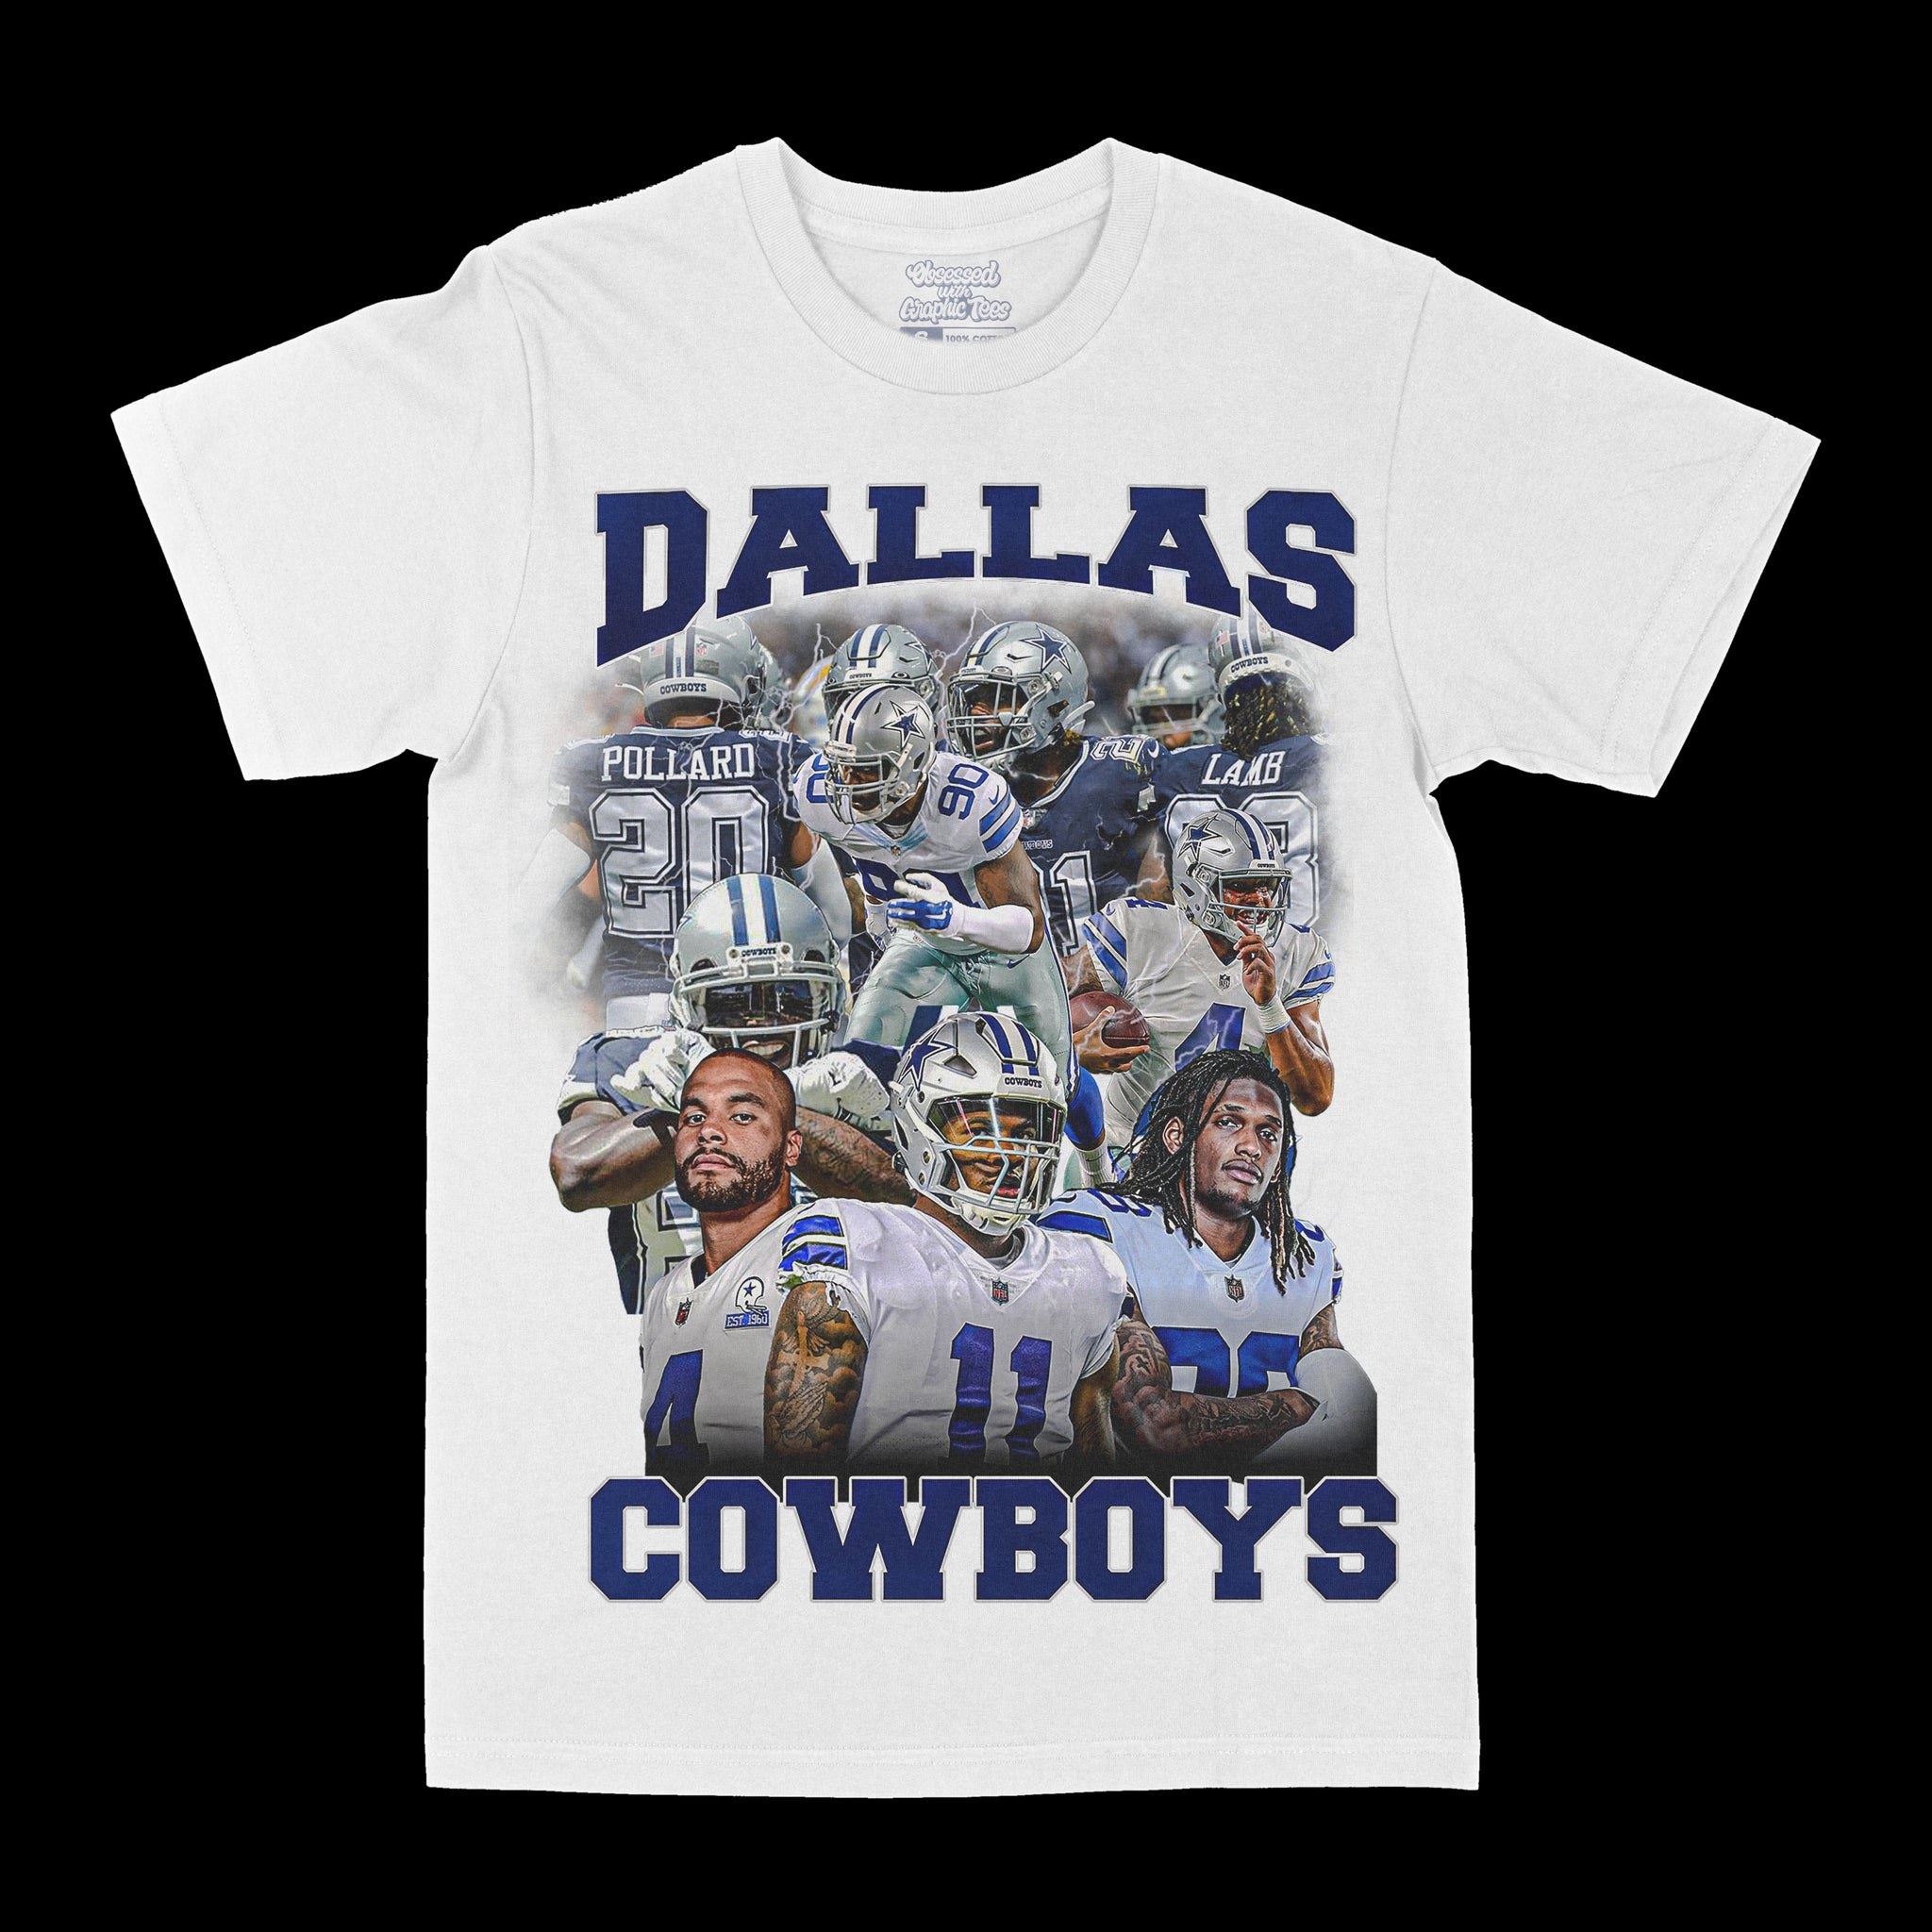 Dallas Cowboys "America's Team" Tee